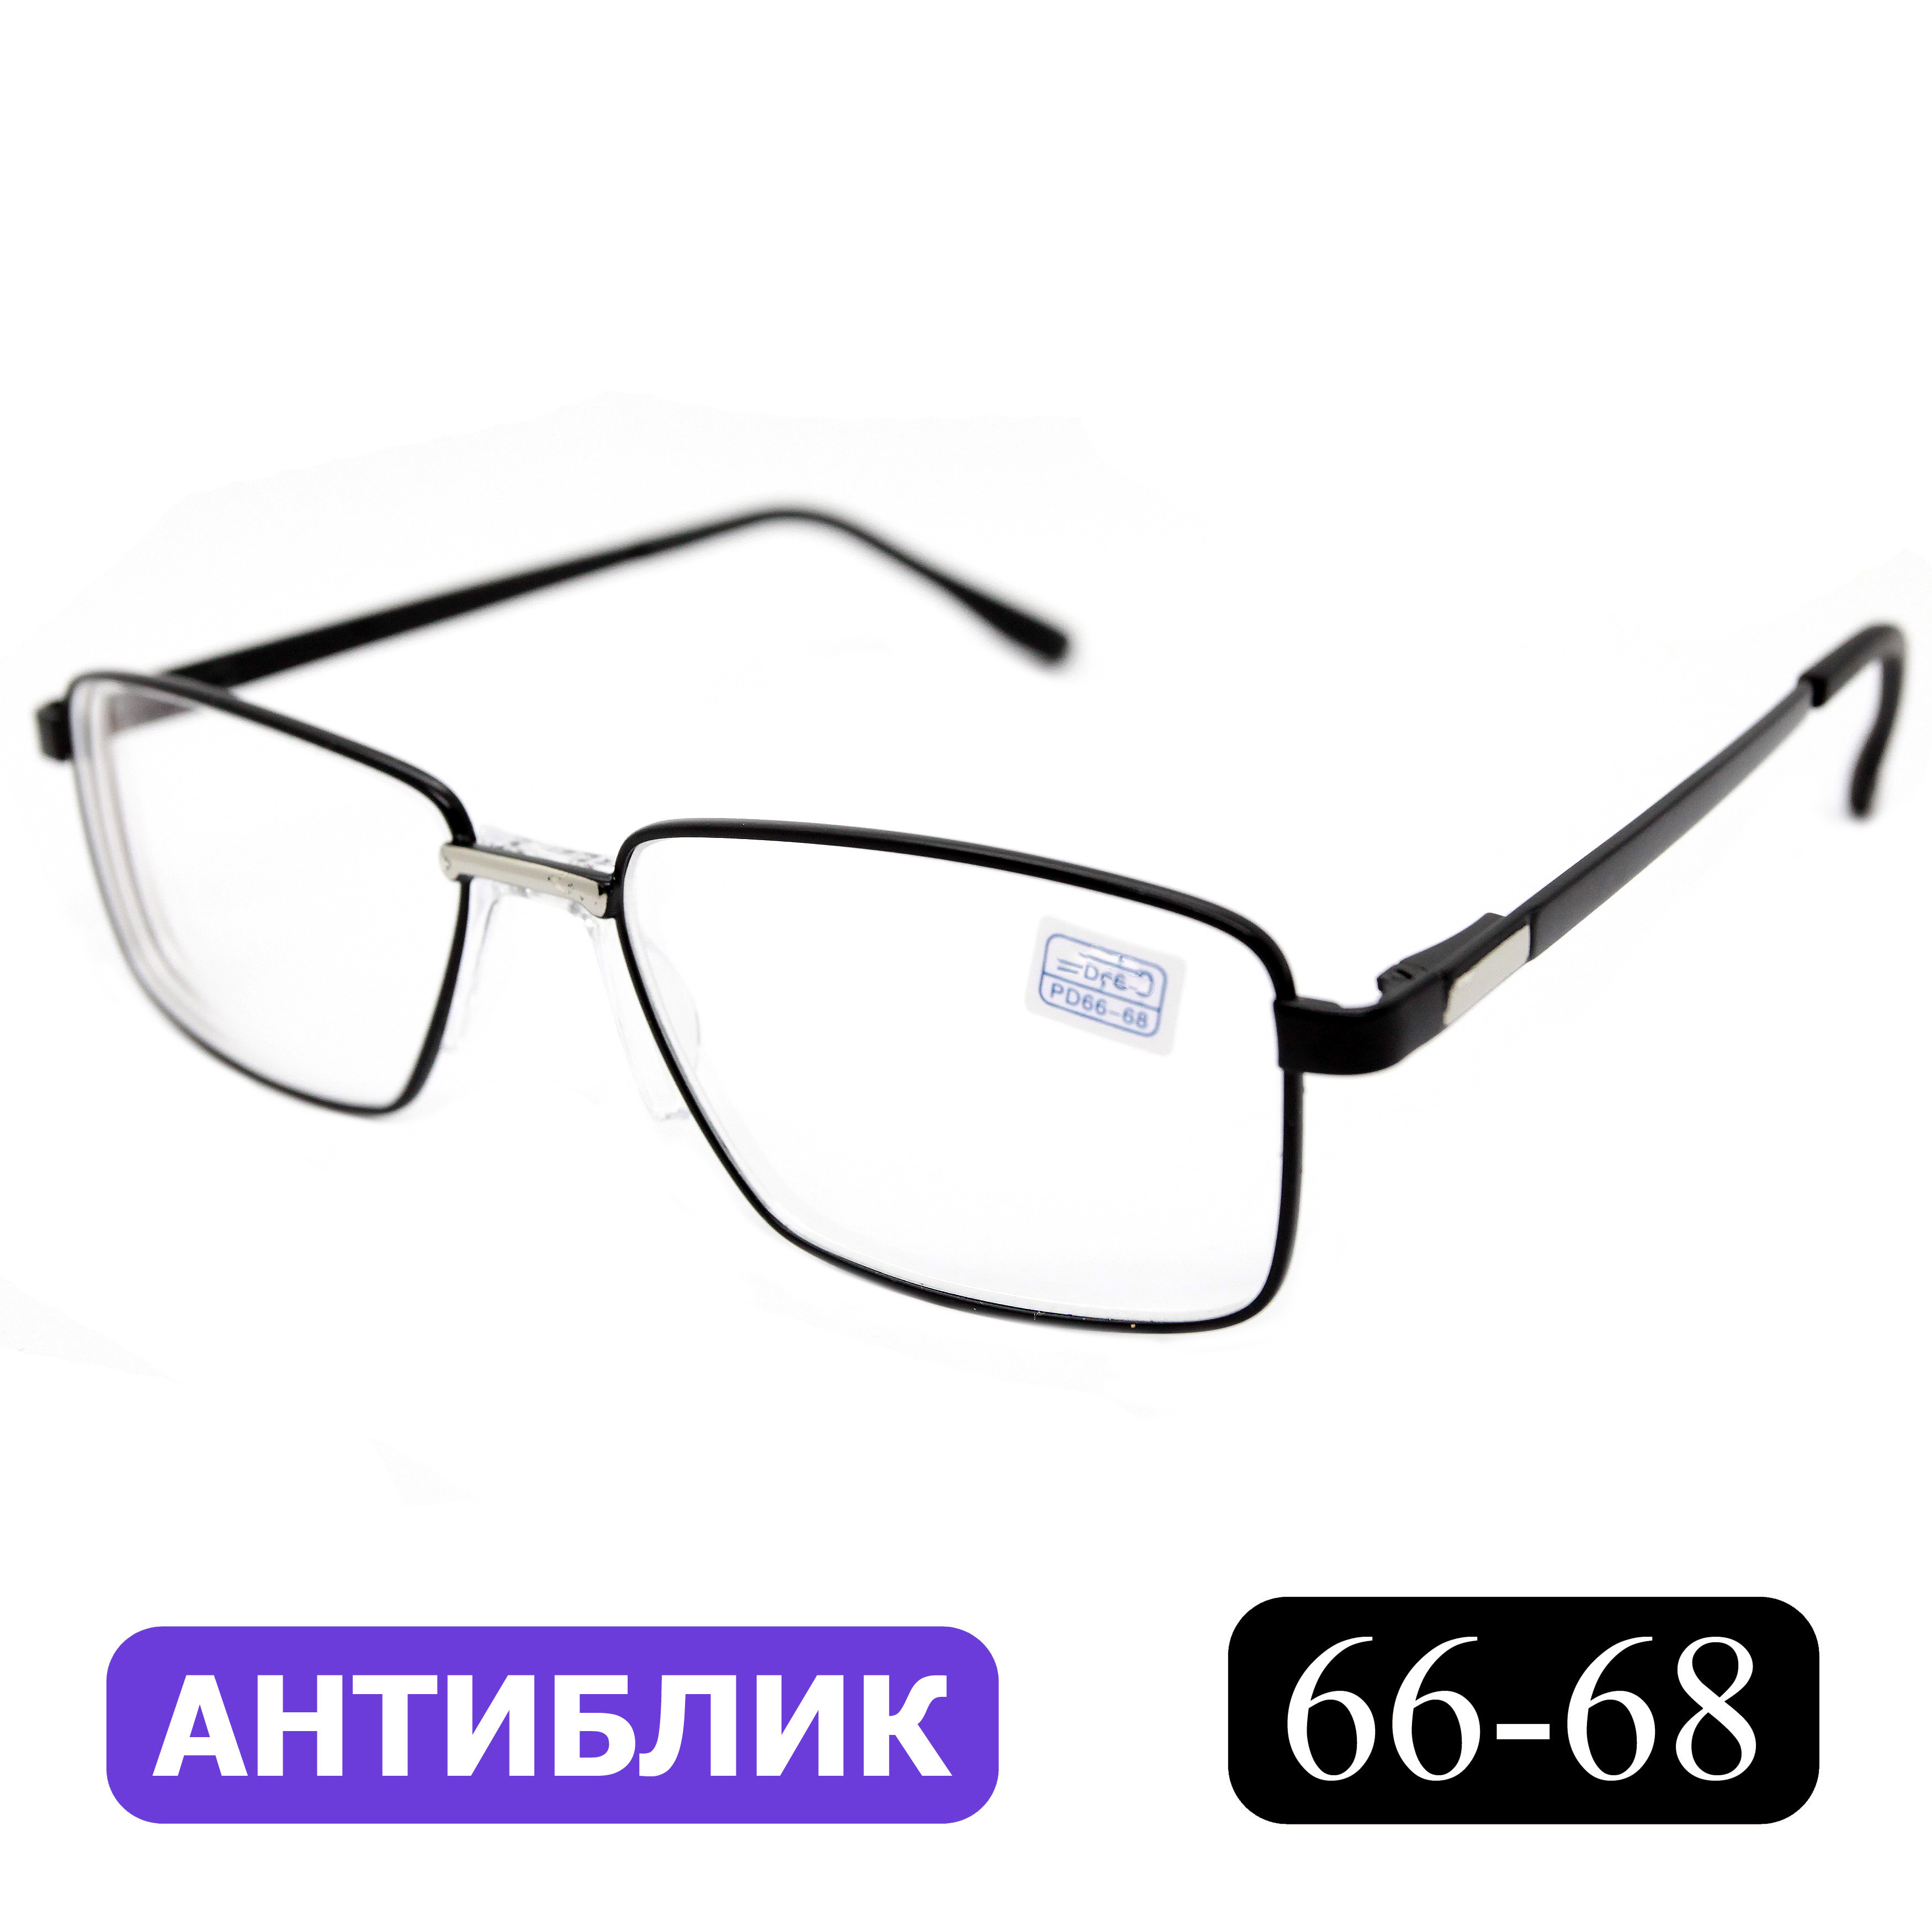 Готовые очки для зрения Favarit 7705 -5,00, без футляра, с антибликом, черные, РЦ 66-68